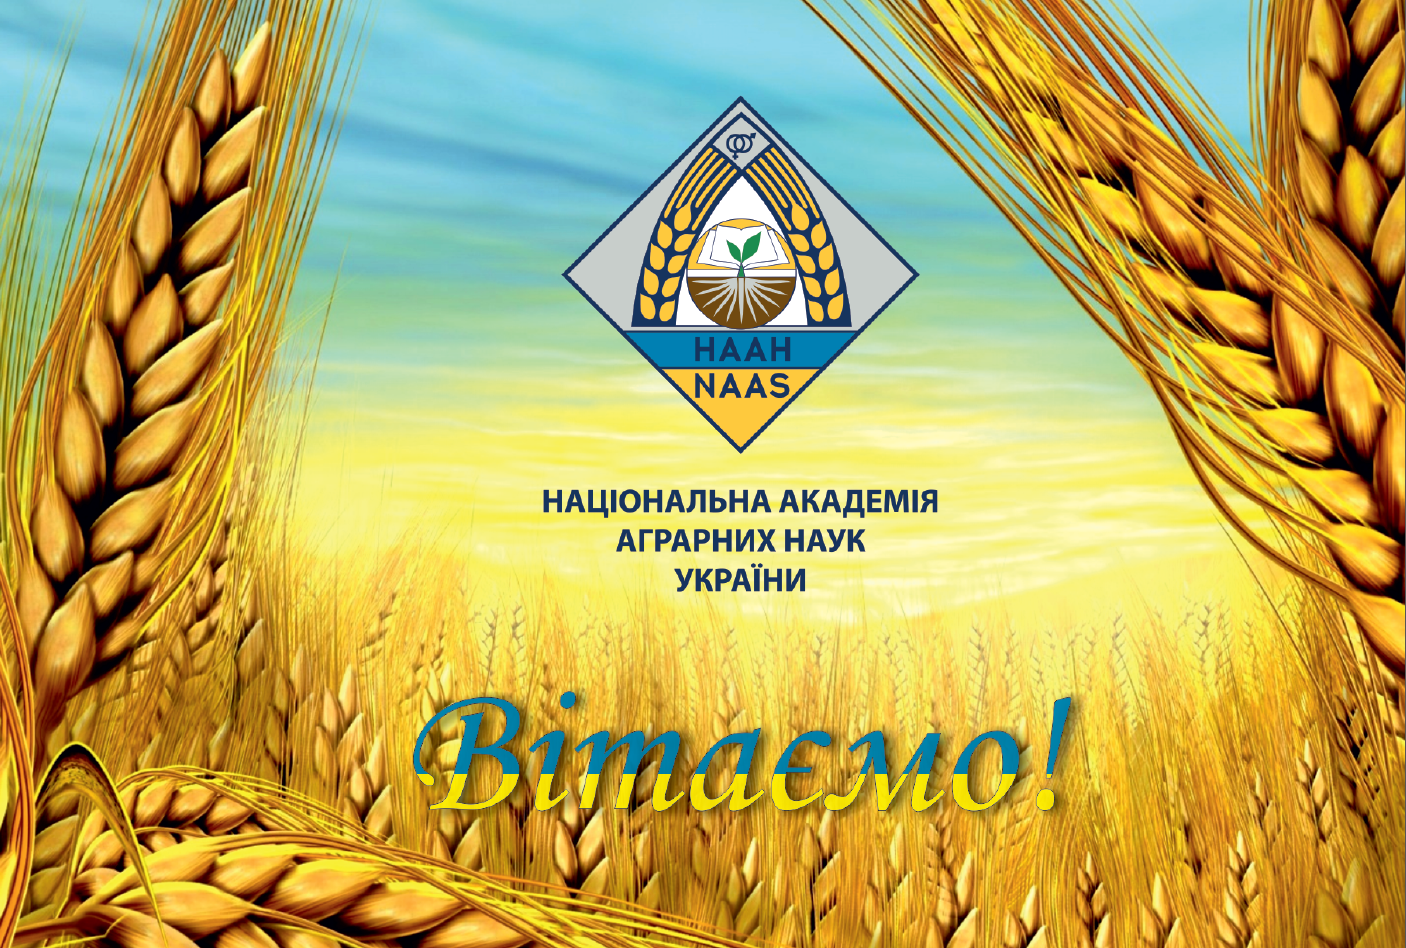 Вітаємо з присудженням Державної премії України в галузі науки і техніки 2014 року